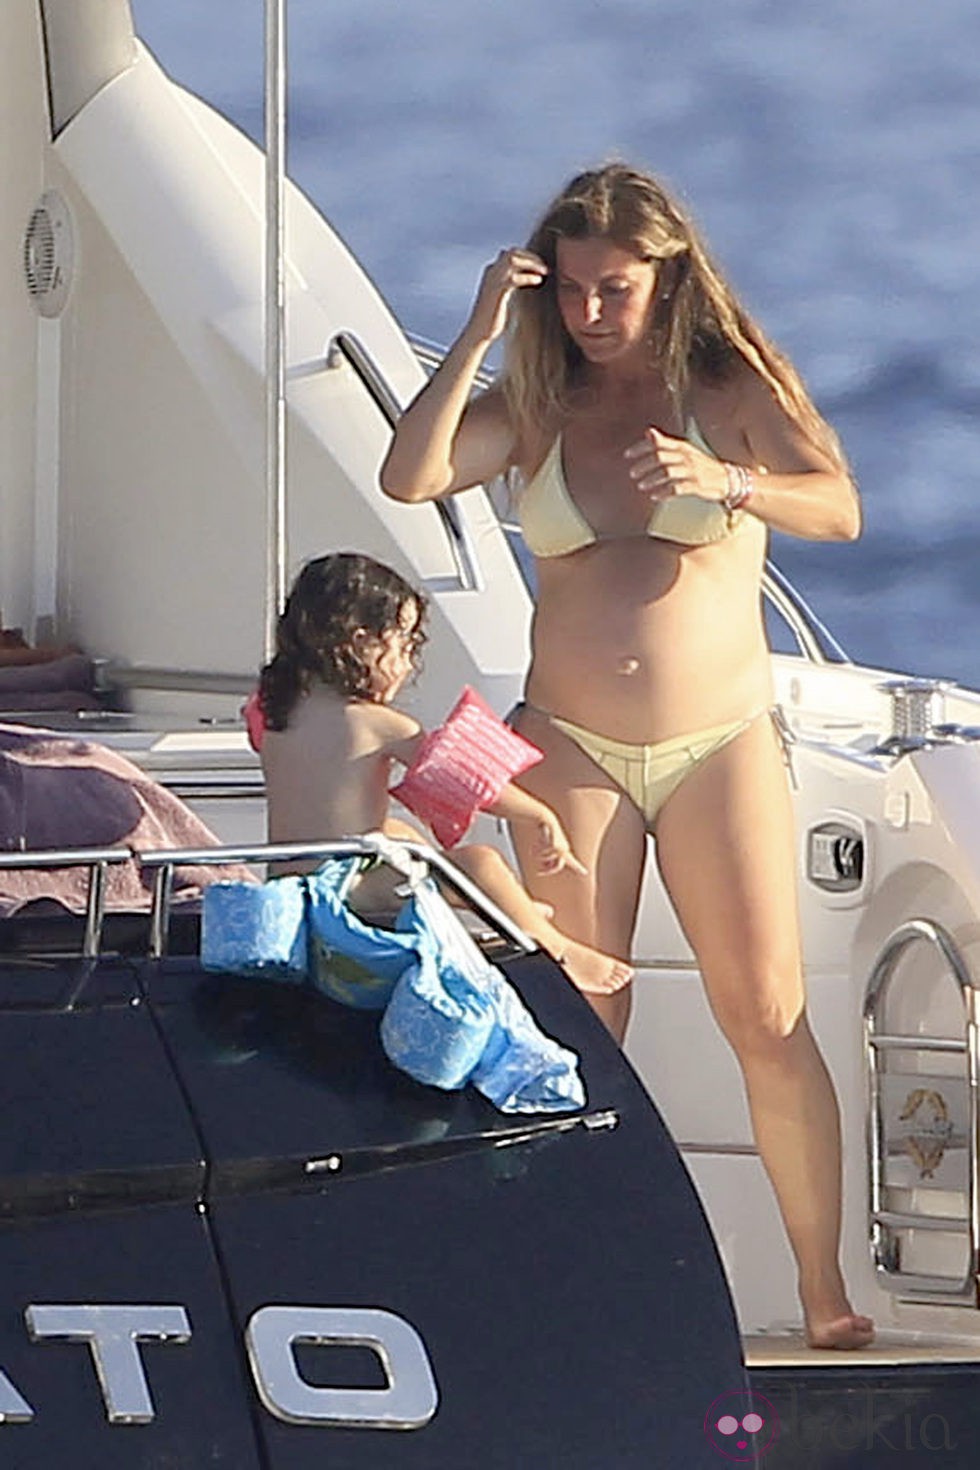 Arantxa Sánchez Vicario con su hija en Ibiza